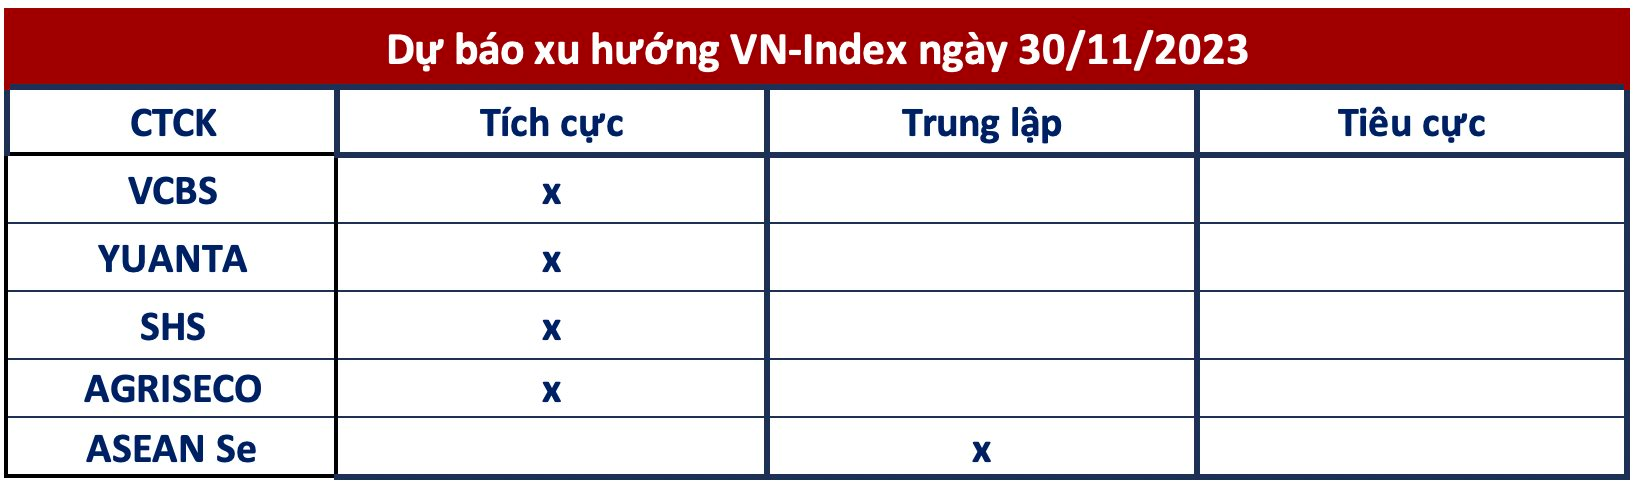 Góc nhìn công ty chứng khoán: VN-Index tiến lên 1.115 điểm, tập trung vào cổ phiếu đang thu hút dòng tiền - Ảnh 1.